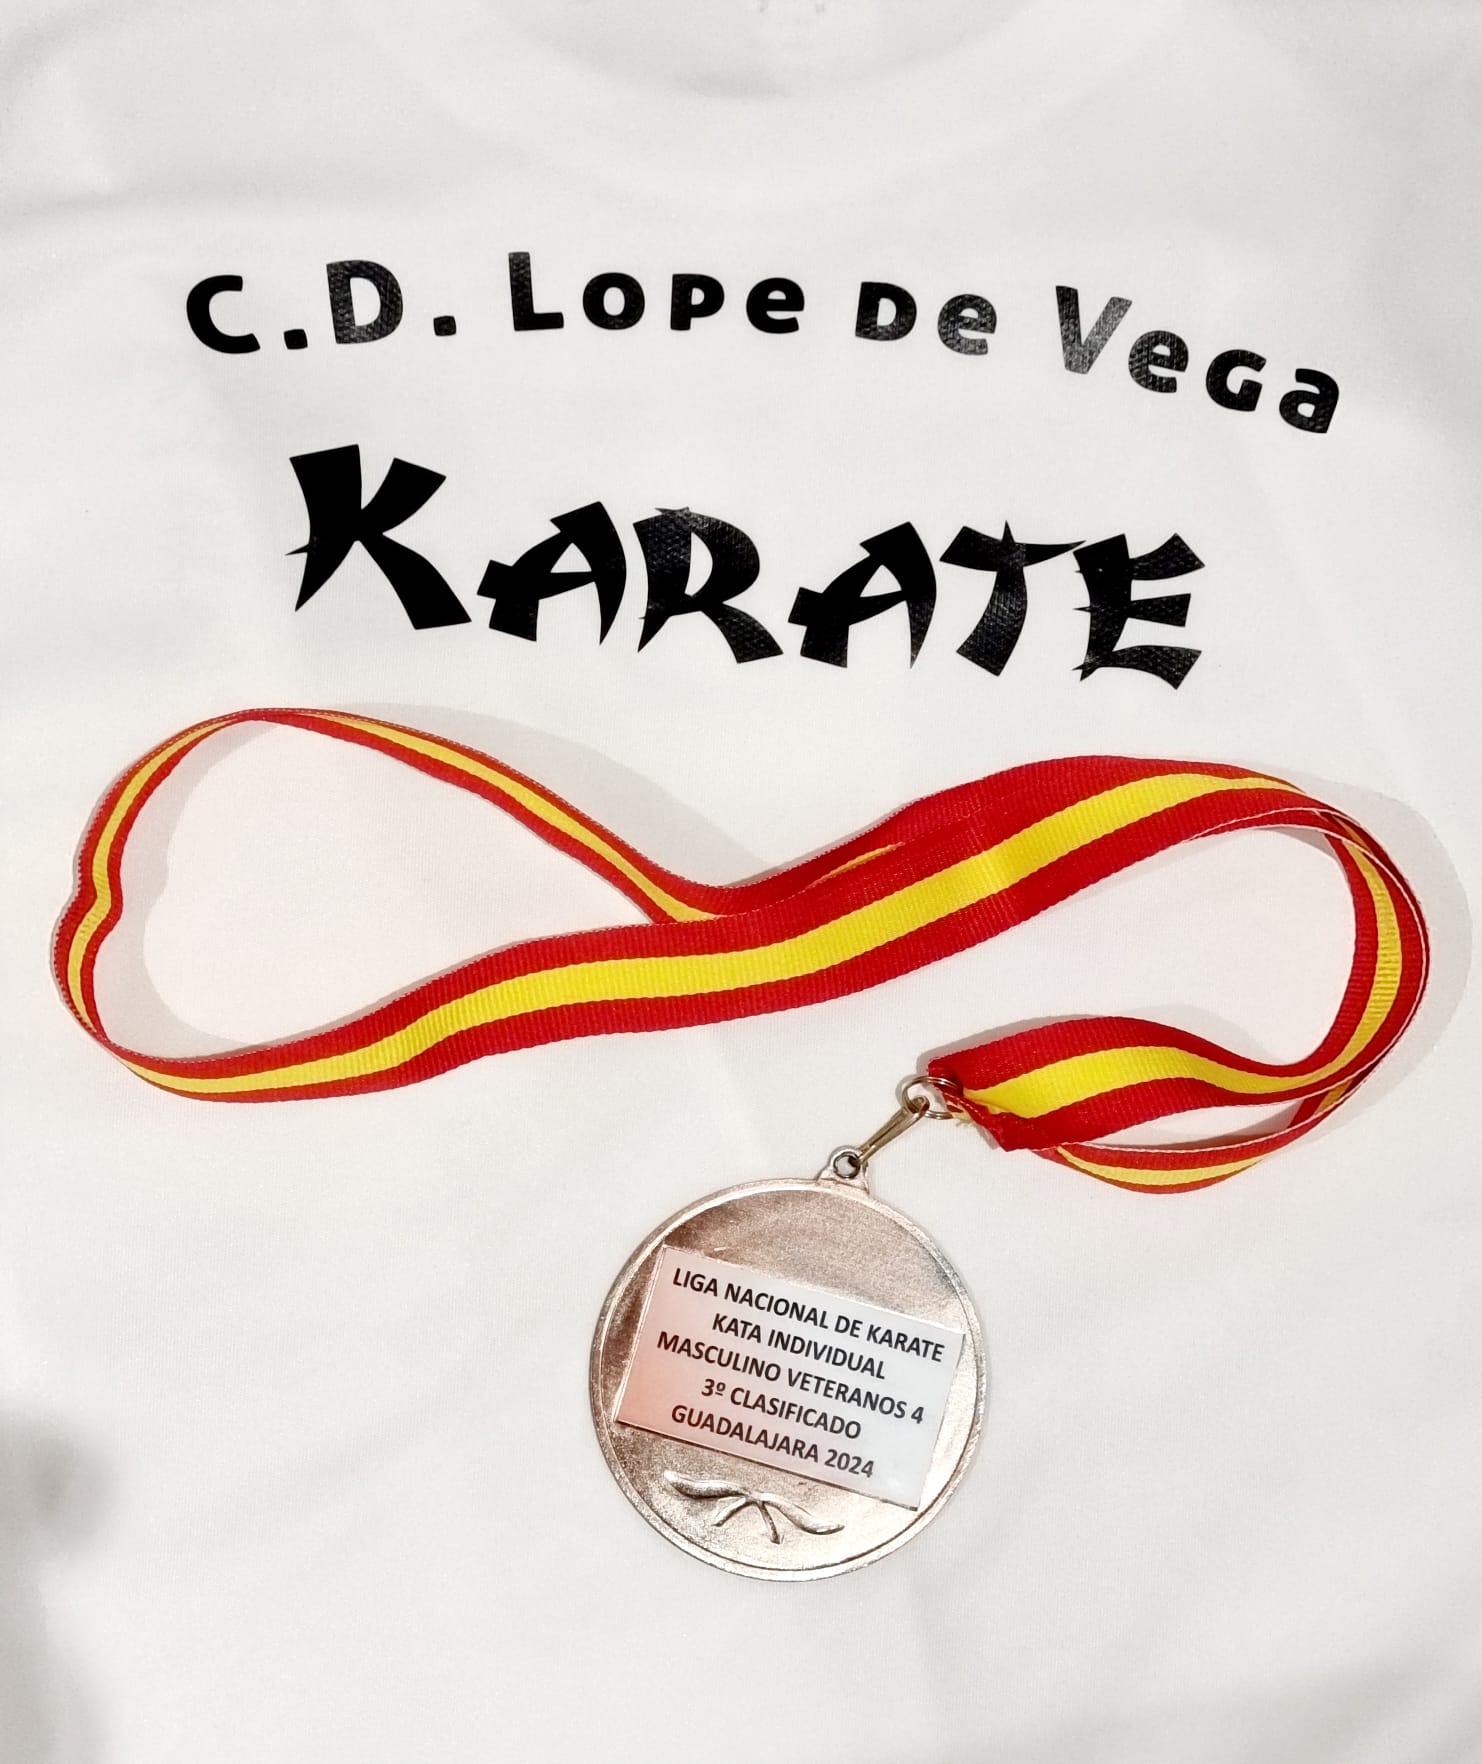 Club deportivo Lope de Vega kárate Carlos García medalla de bronce